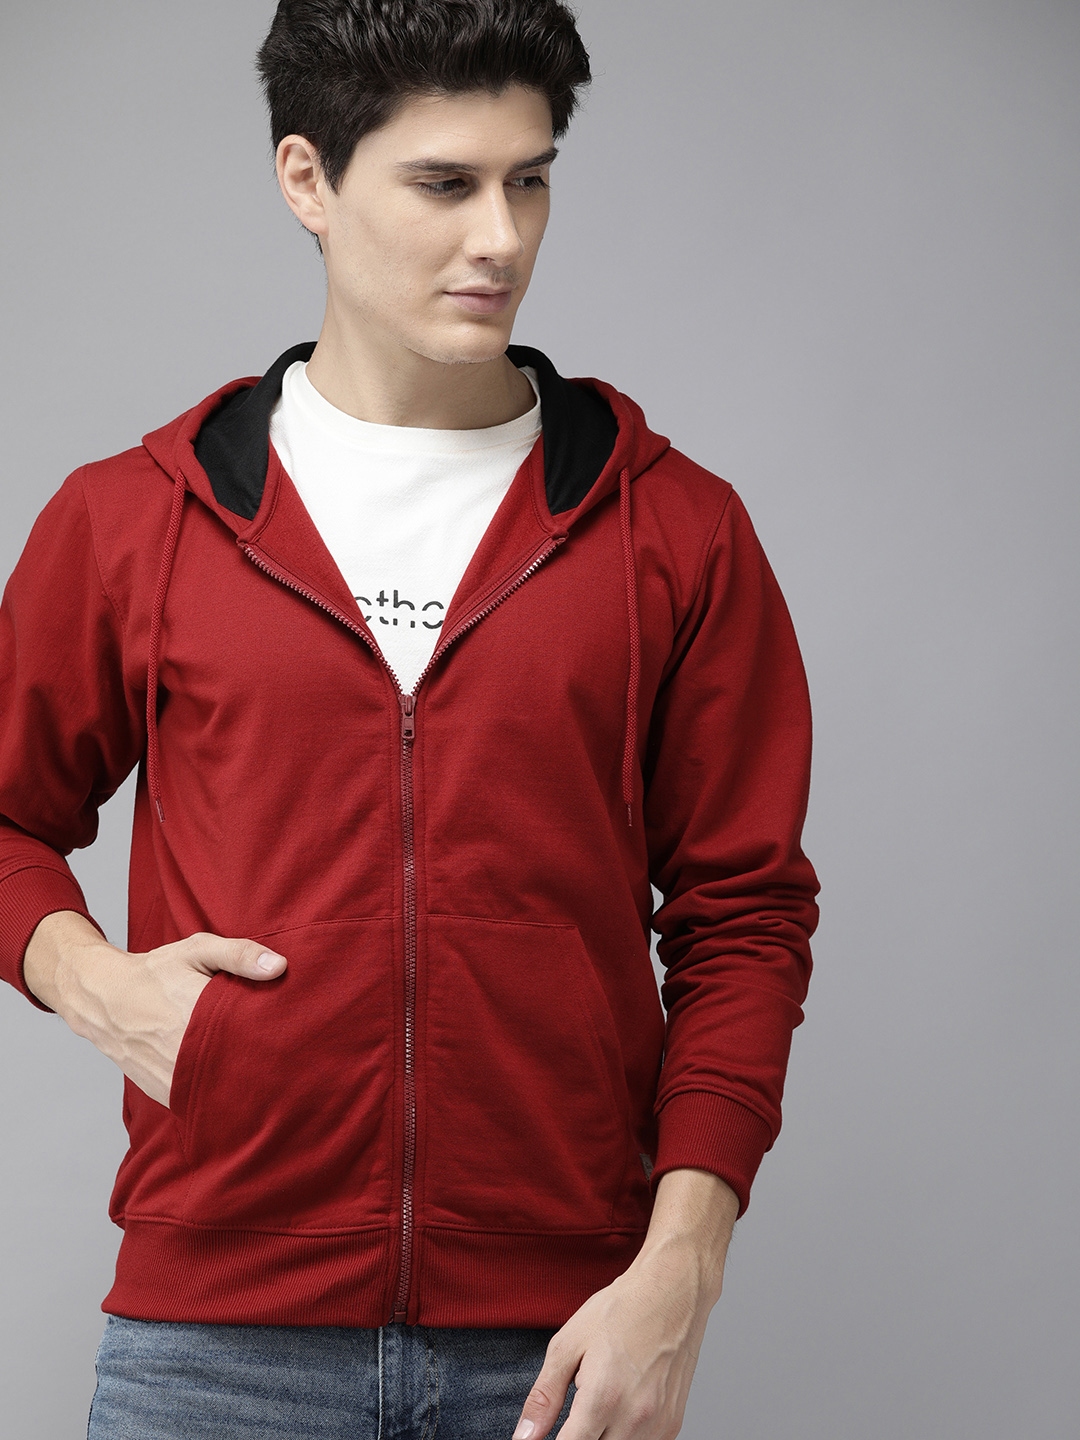 Buy Roadster Men Red Solid Hooded Sweatshirt - Sweatshirts for Men ...